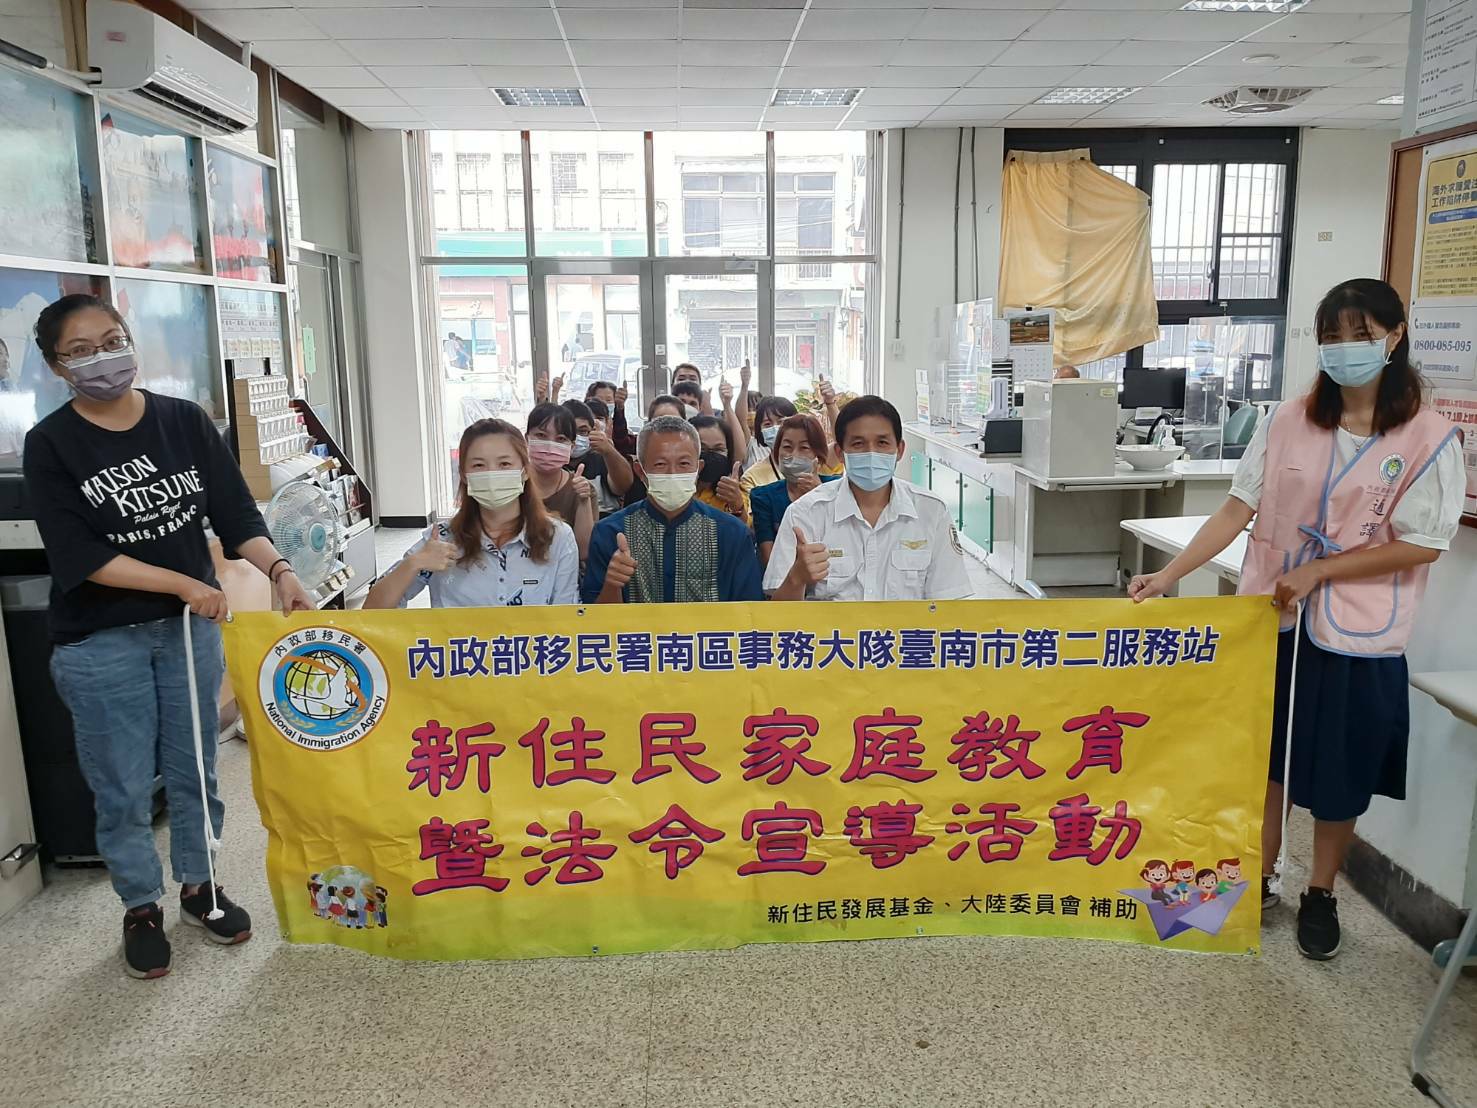 臺南移民署邀請泰北孤軍後裔分享勵志人生並且宣導反詐騙及防範非洲豬瘟